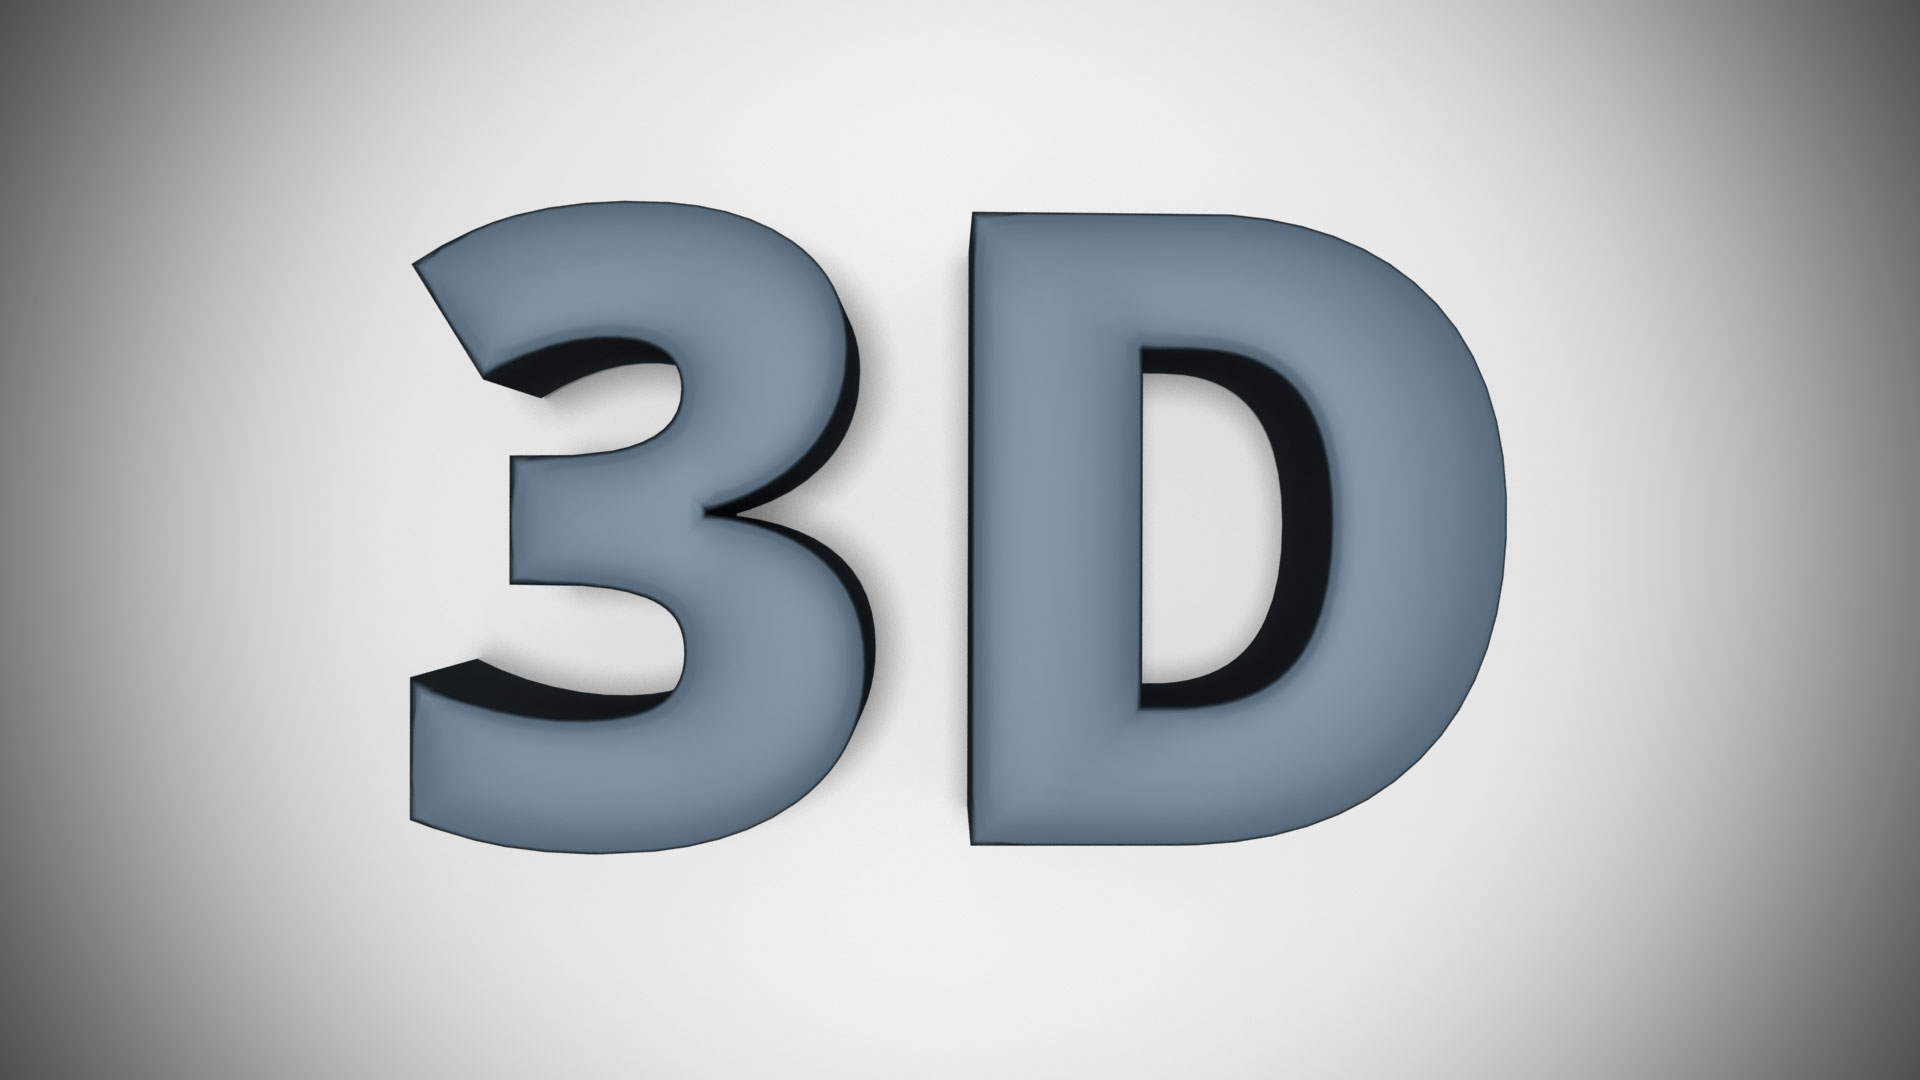 3D text